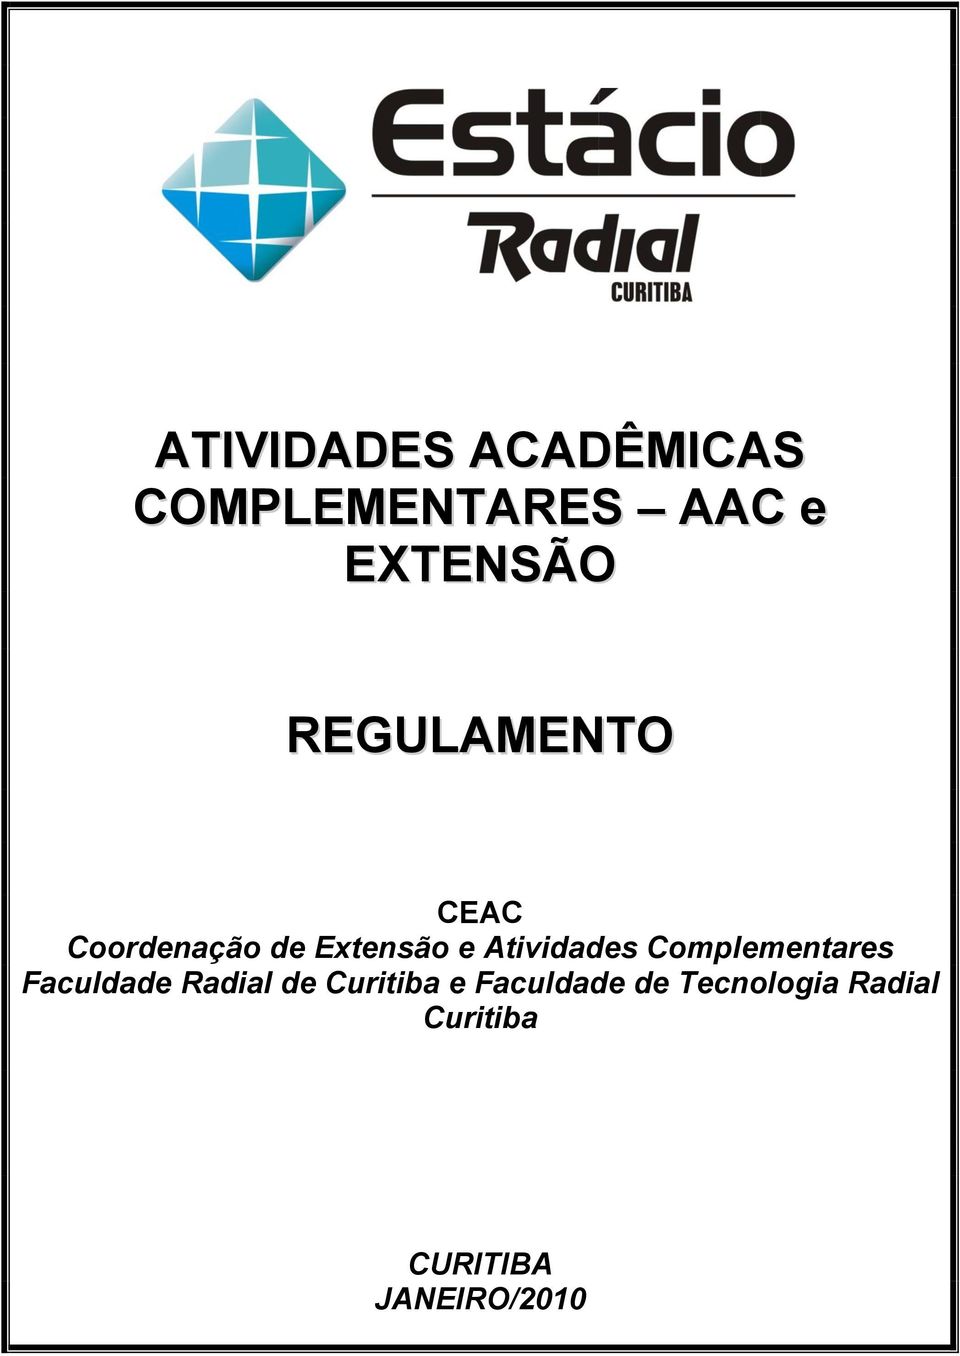 Complementares Faculdade Radial de Curitiba e